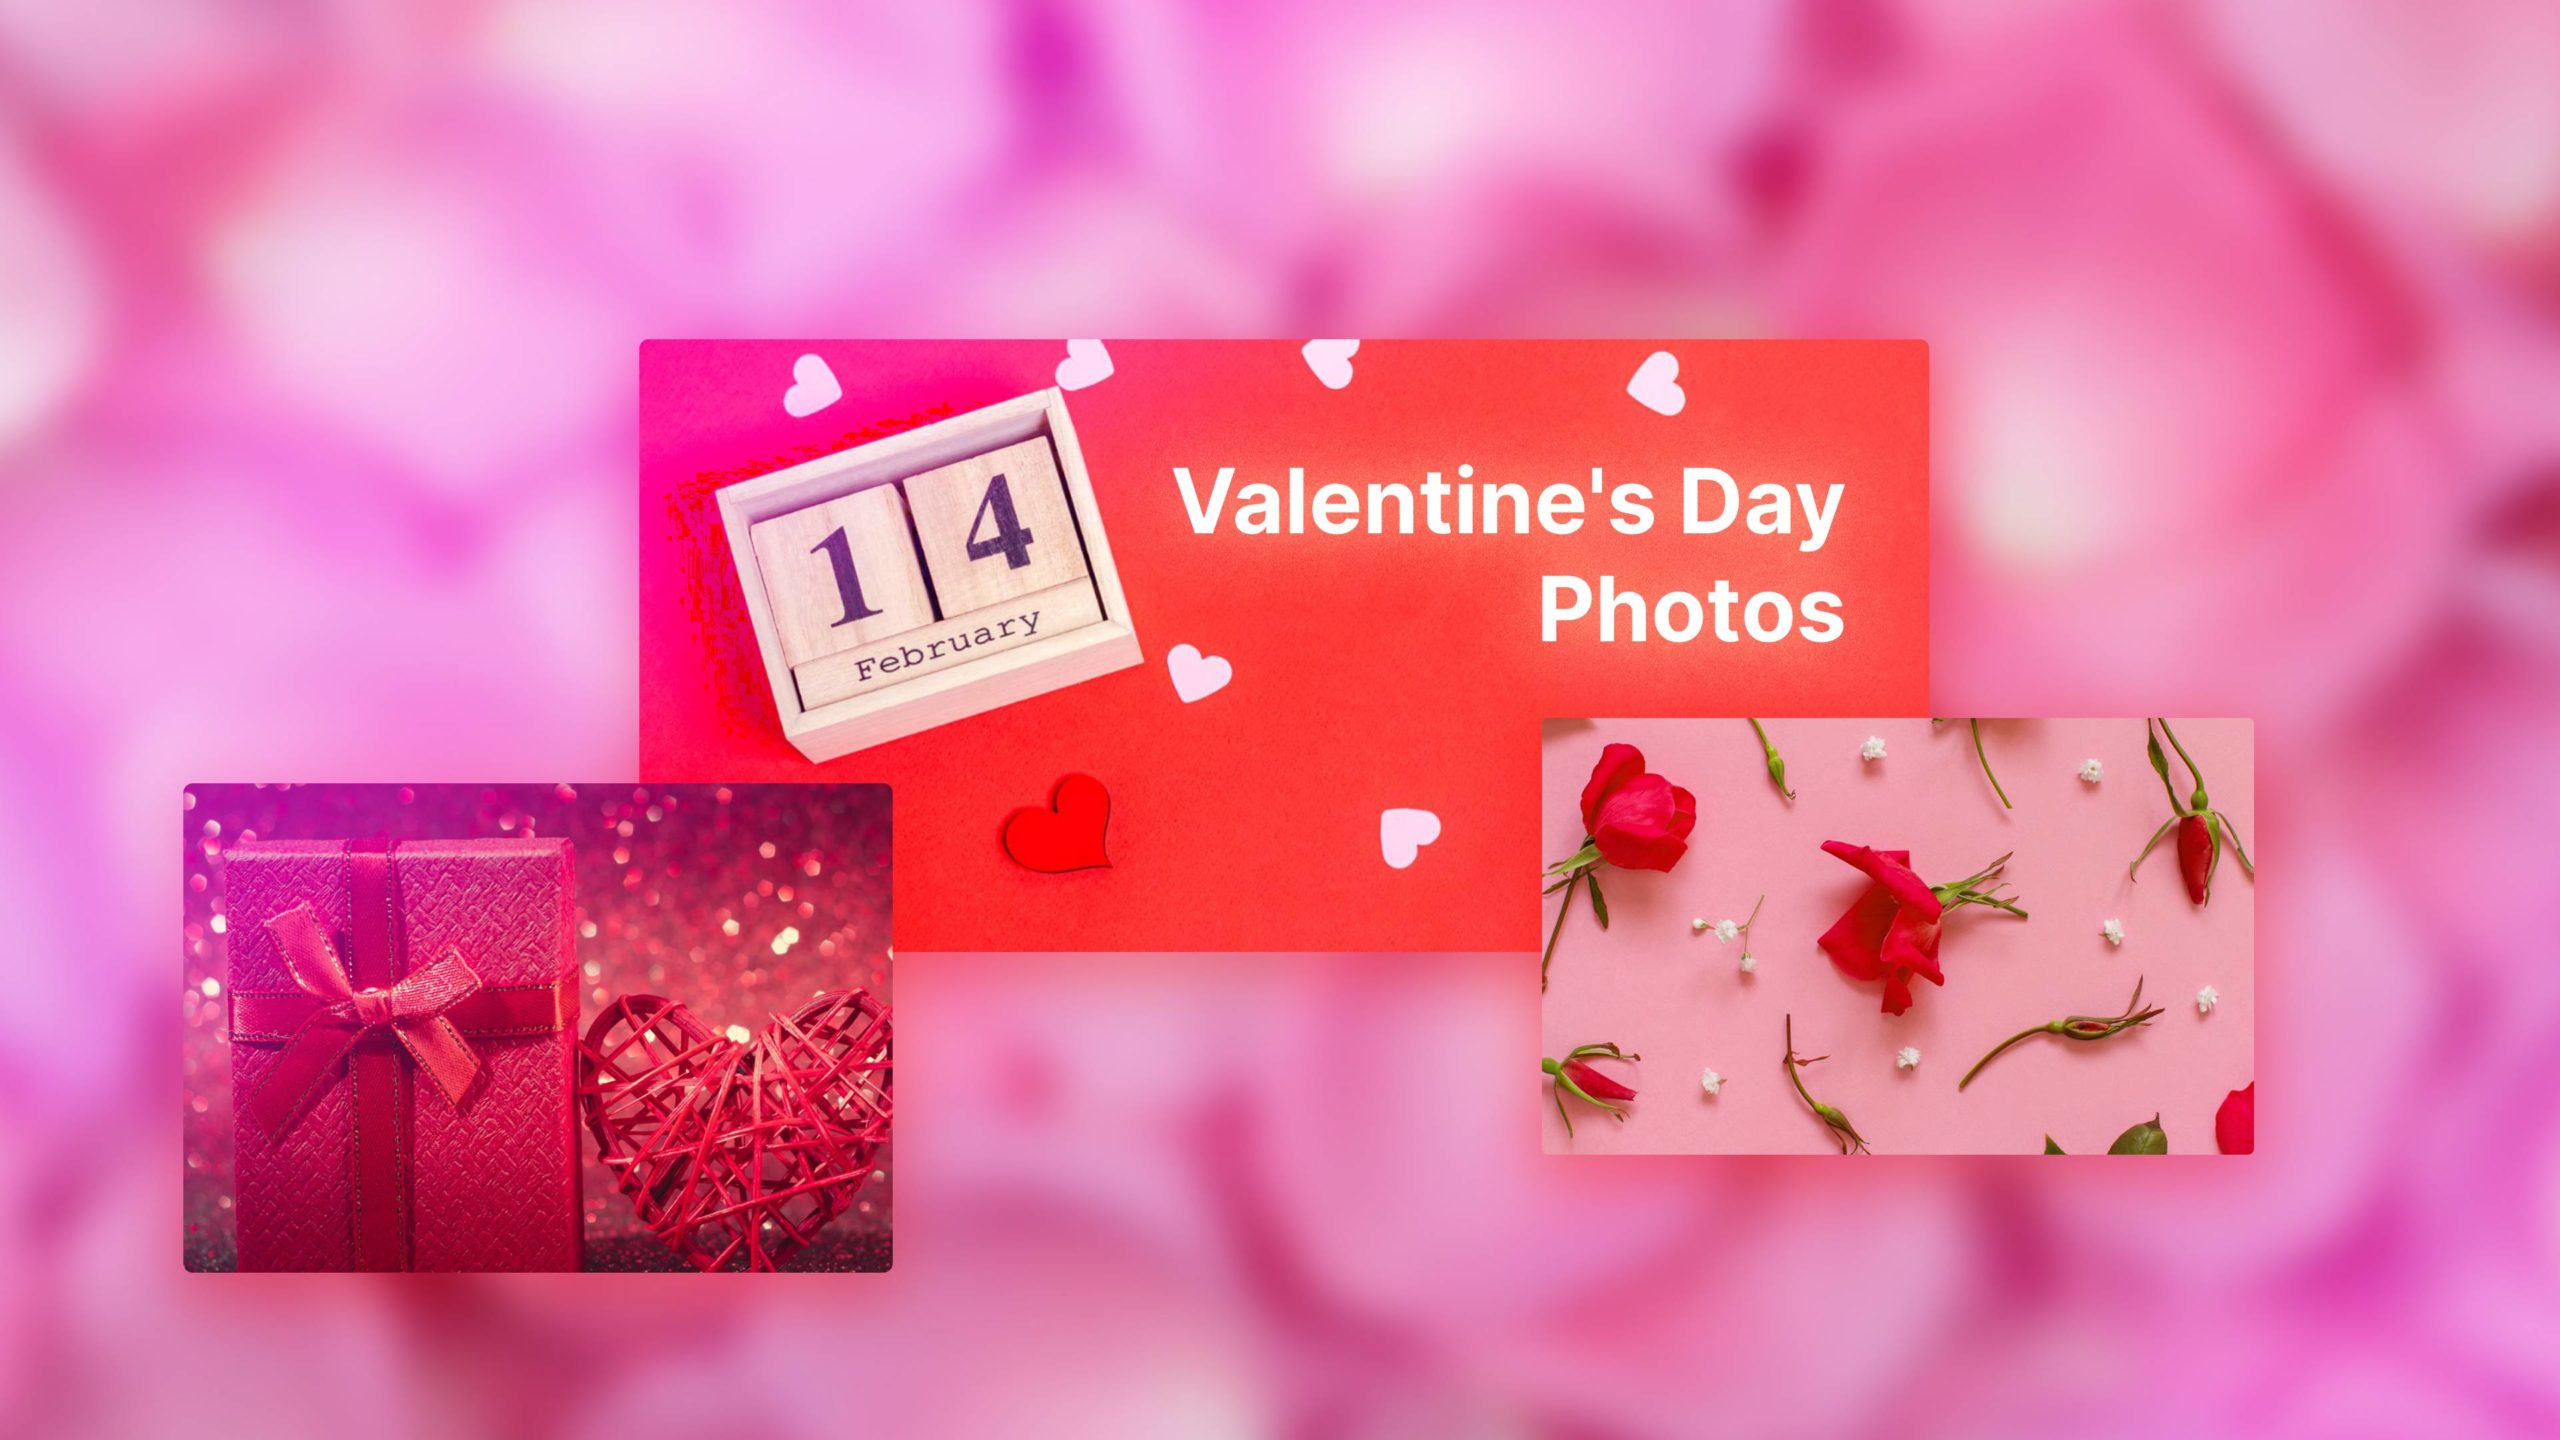  Las 28 fotos y fondos más románticos de San Valentín (Ideas para fotos)